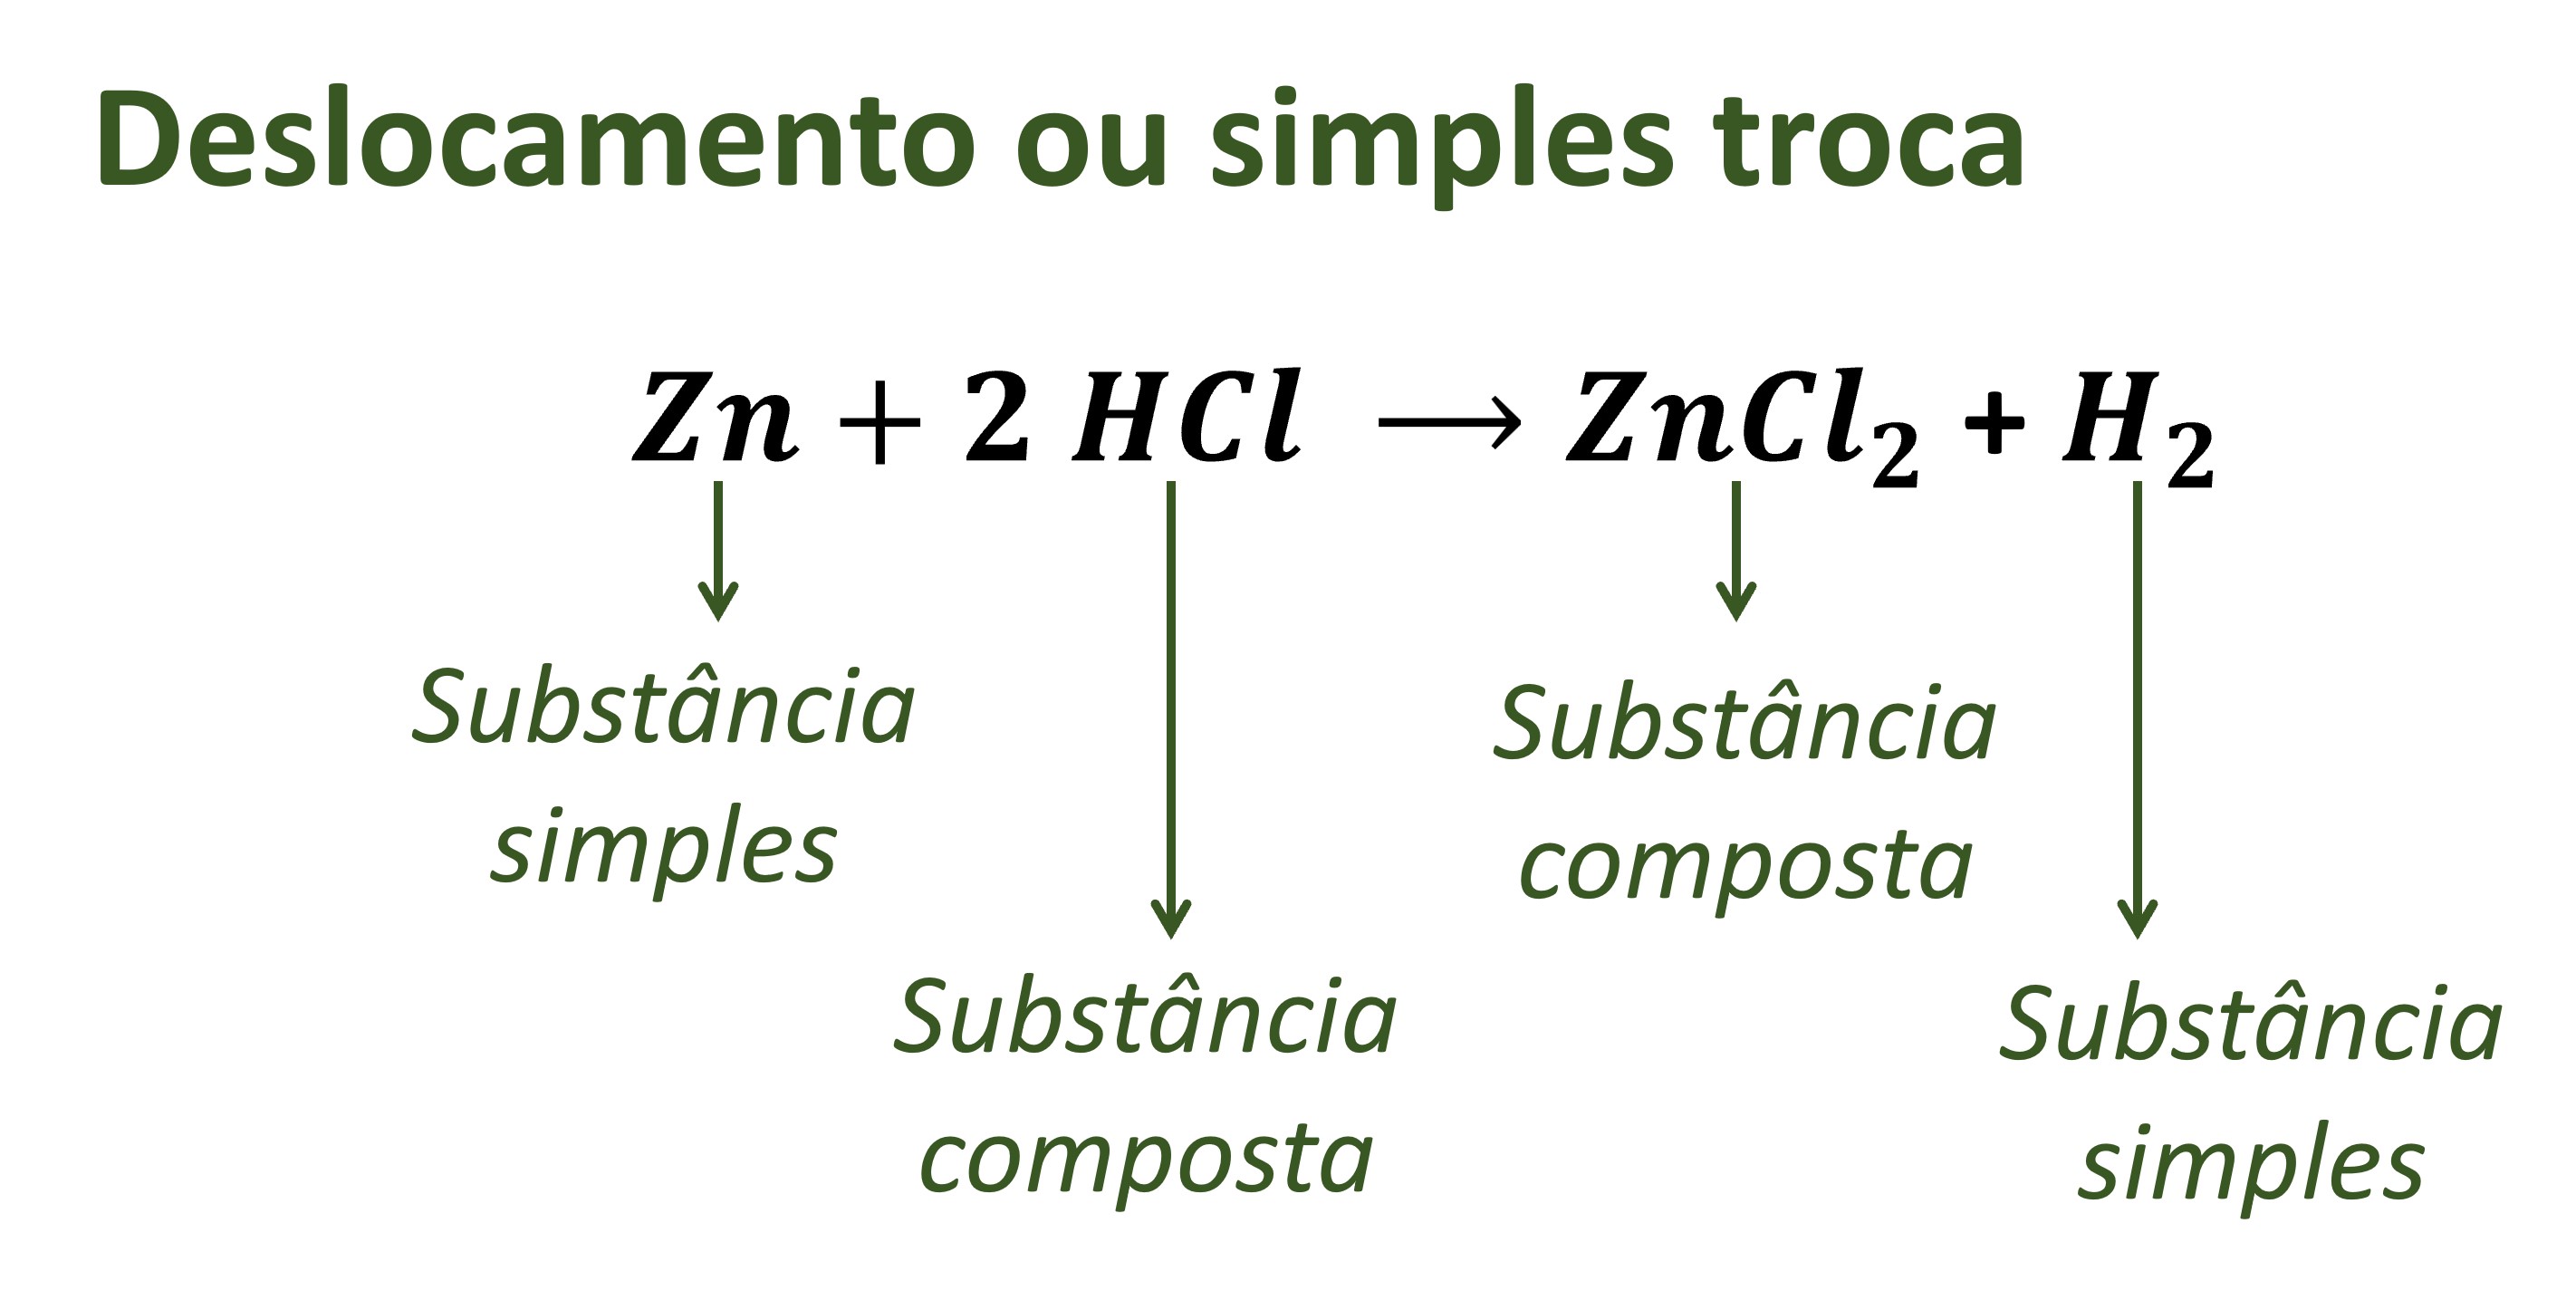 Reação de simples troca entre metal zinco e ácido clorídrico.